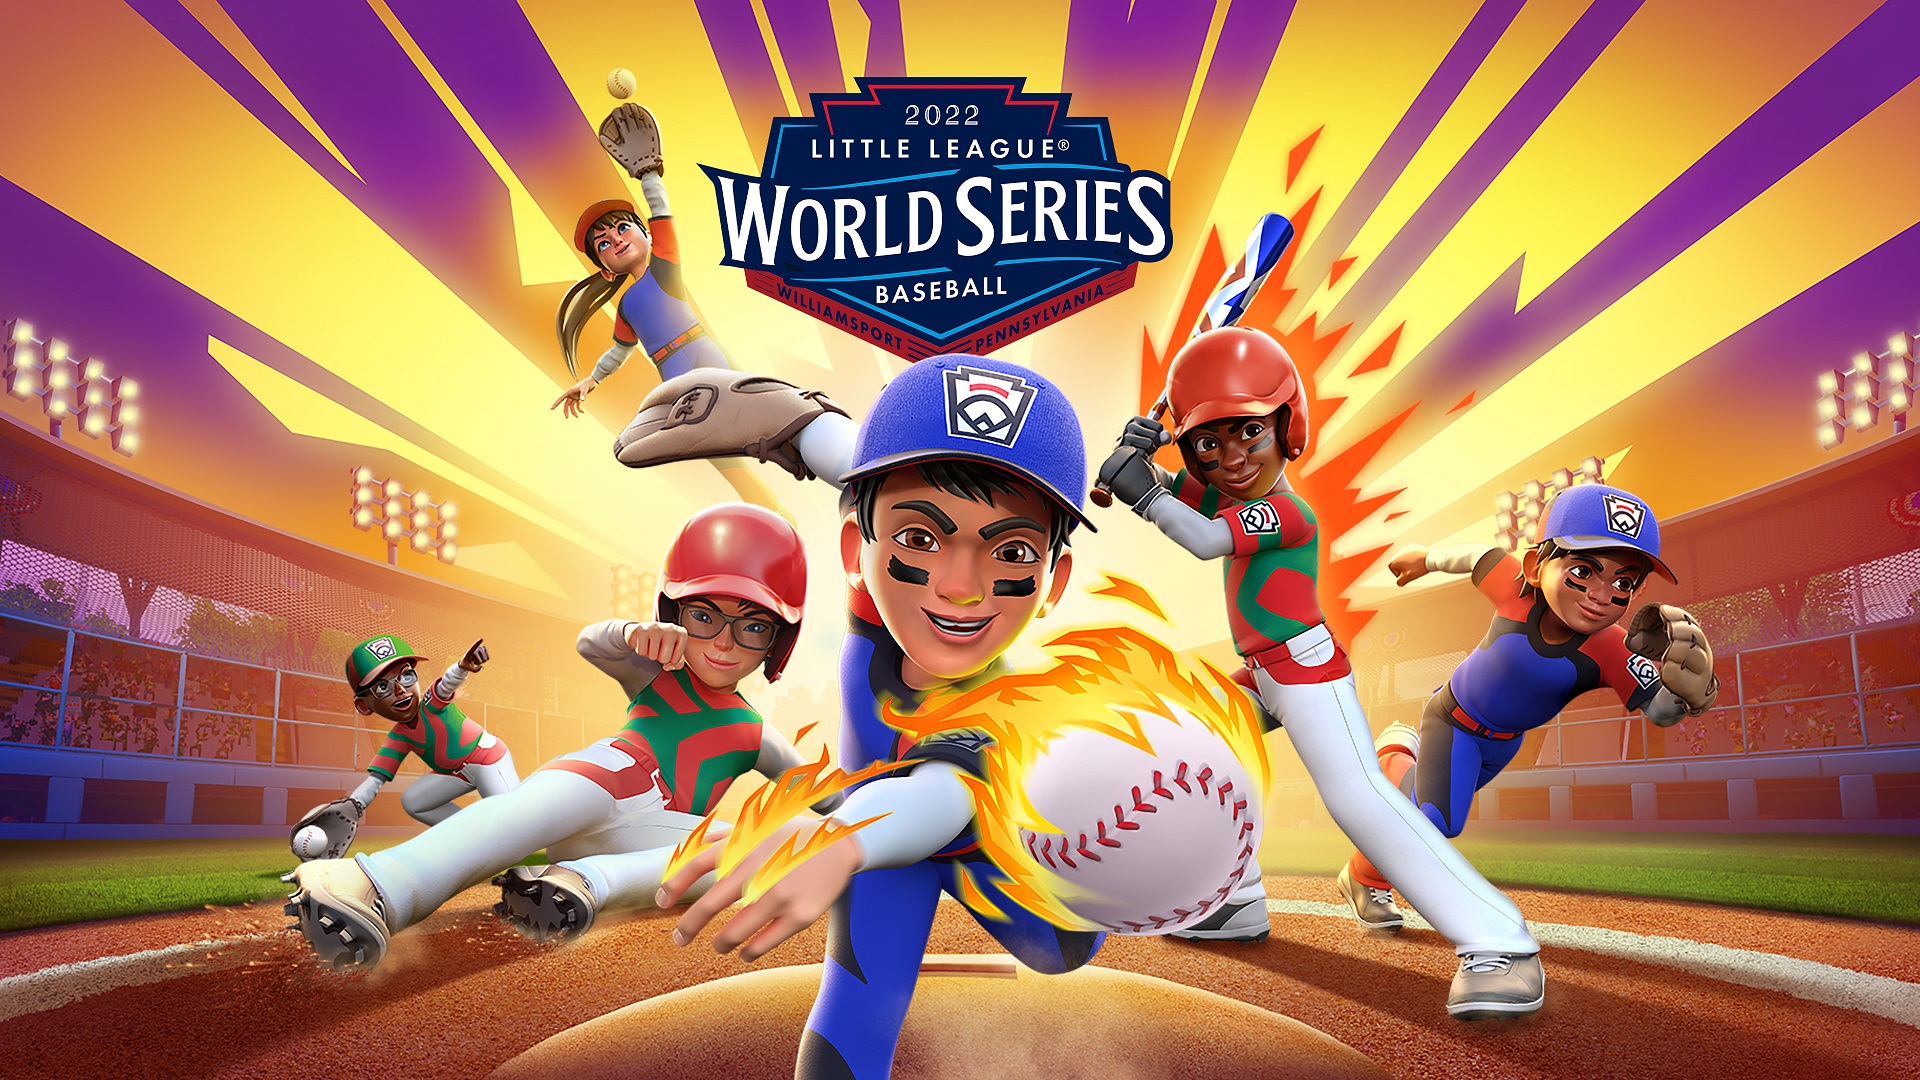 Little League World Series Baseball 2022 06 20 22 ១